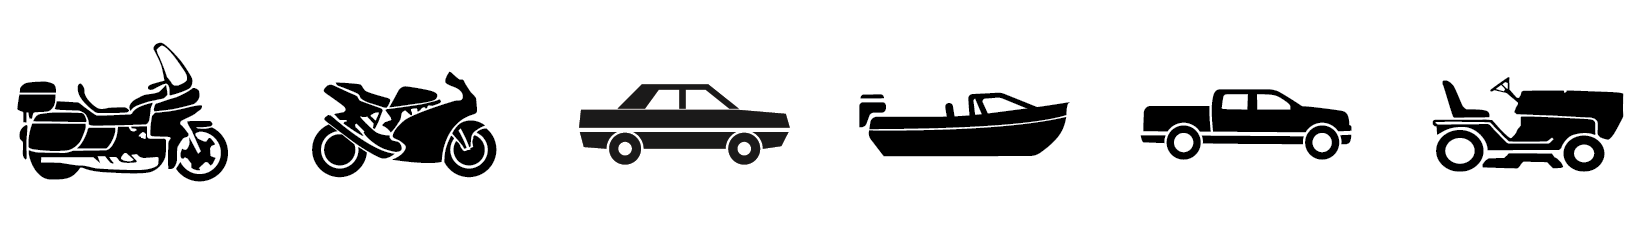 cargador plomo y litio recomendado para ciclomotores, deportes de motor, motocicletas, coches, barcos, camionetas y cortadoras de césped